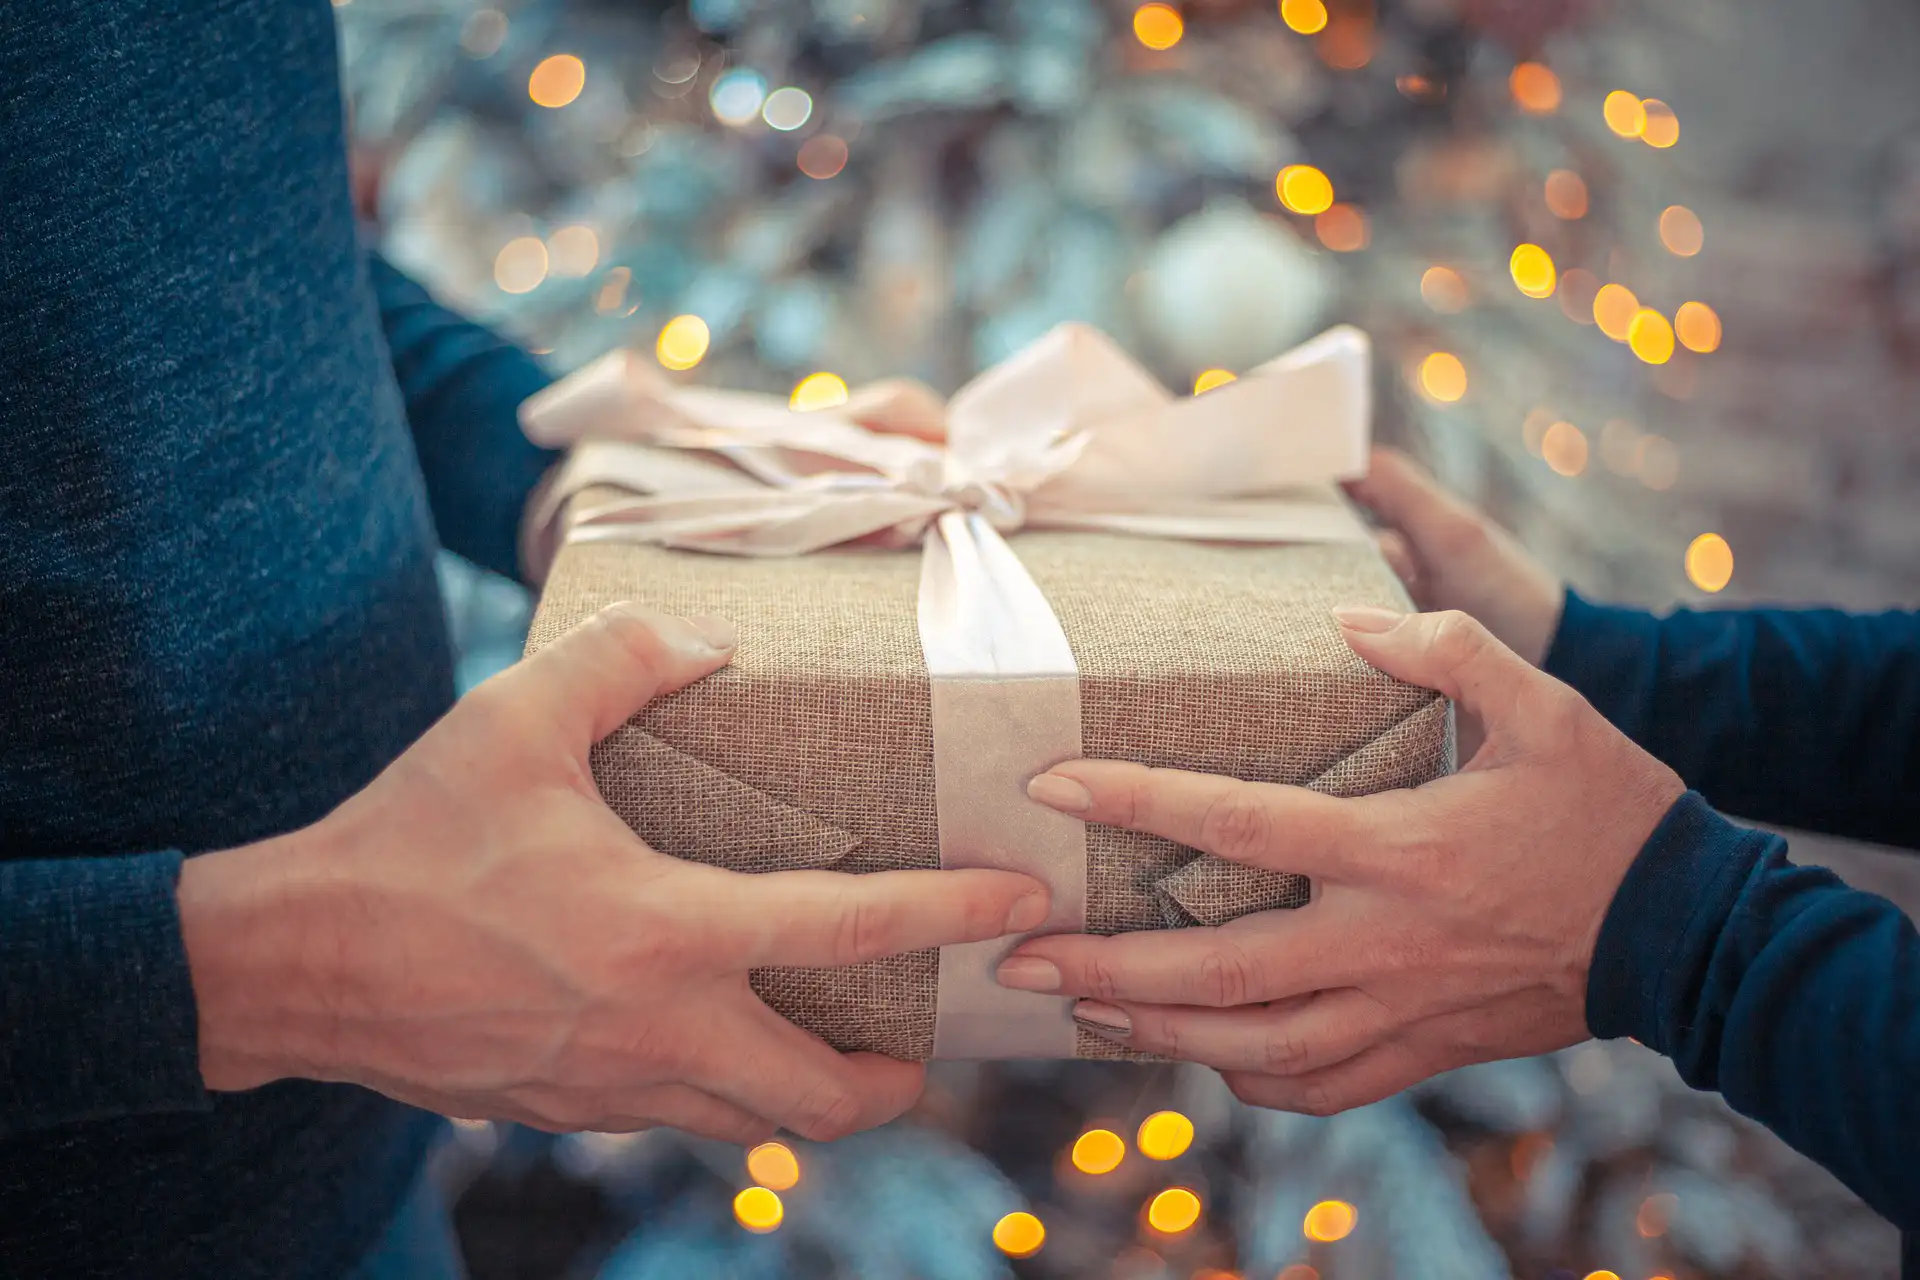 Nell'immagine, lo scambio di un regalo: si vedono le mani di due persone che tengono un pacco regalo con un fiocco color panna. Sullo sfondo, delle luci sfocate.